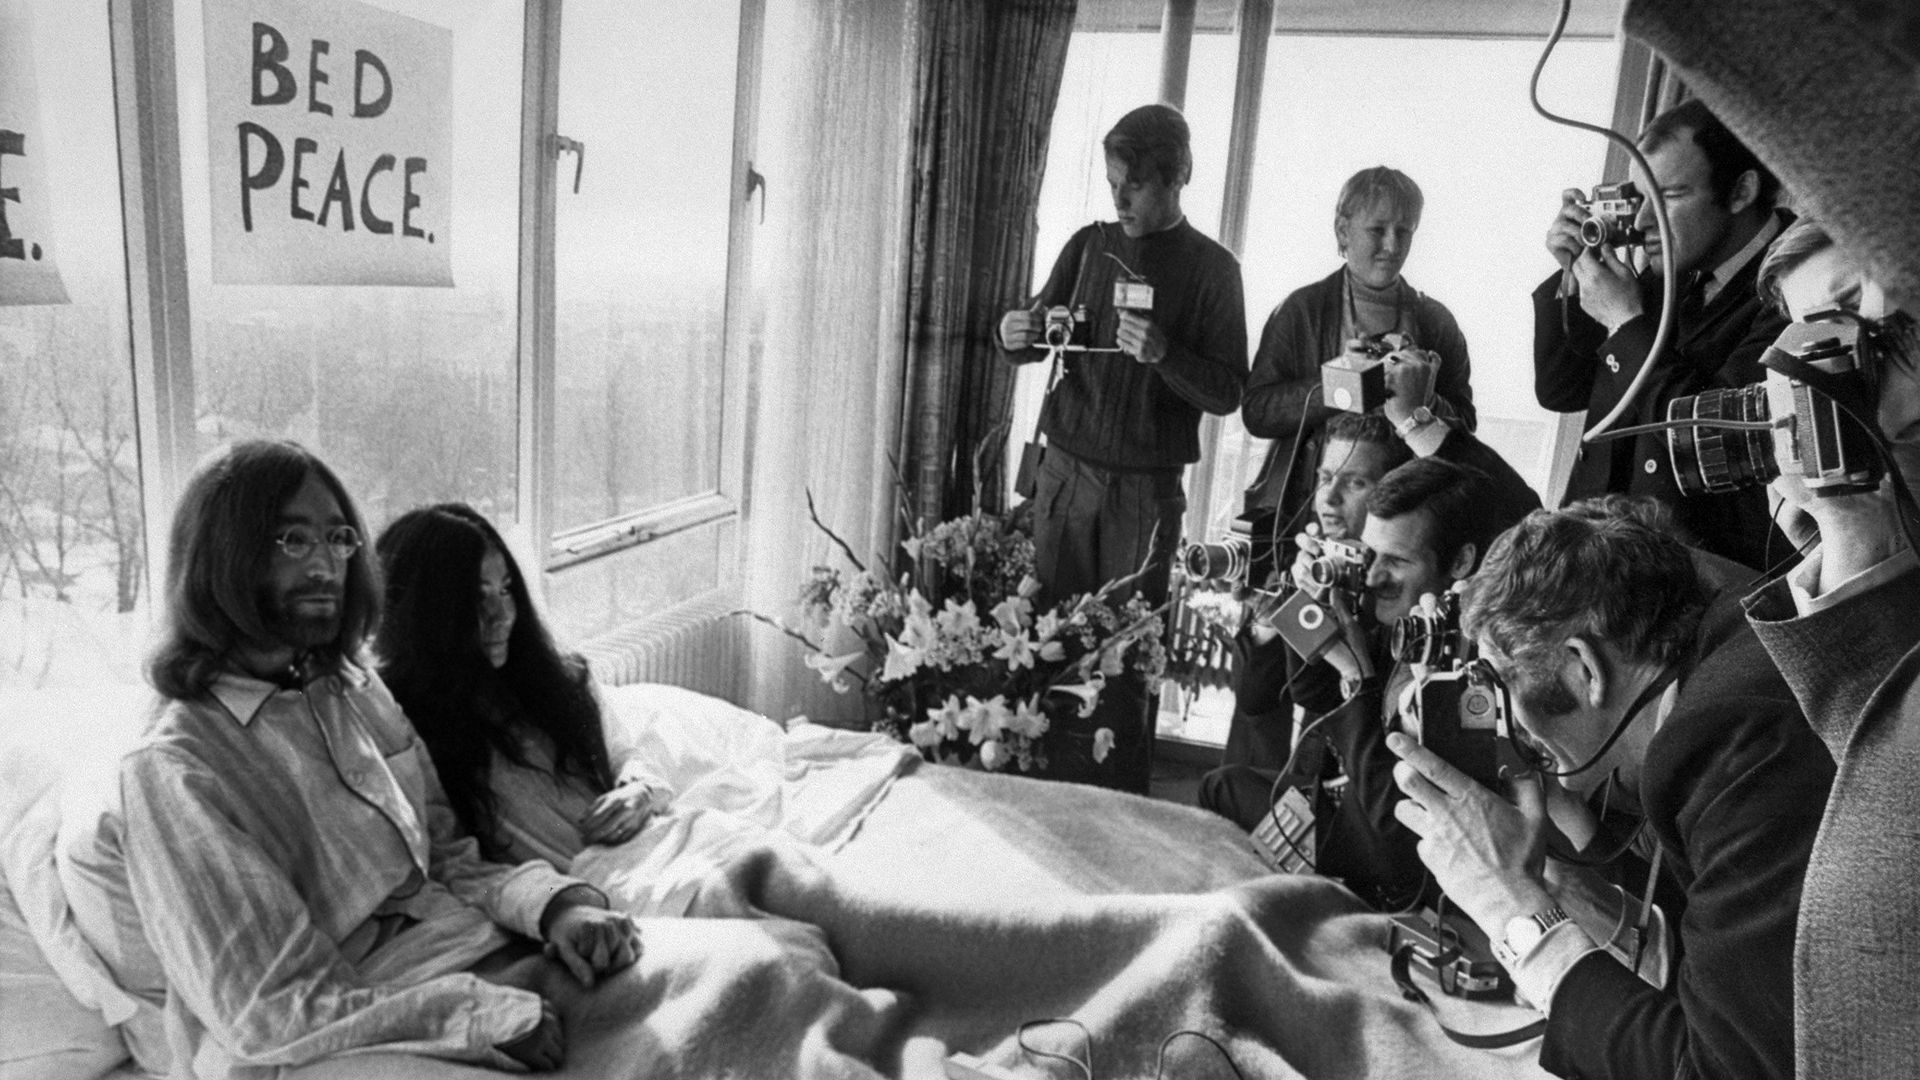 Des images oubliées de John Lennon et Yoko Ono au lit refont surface